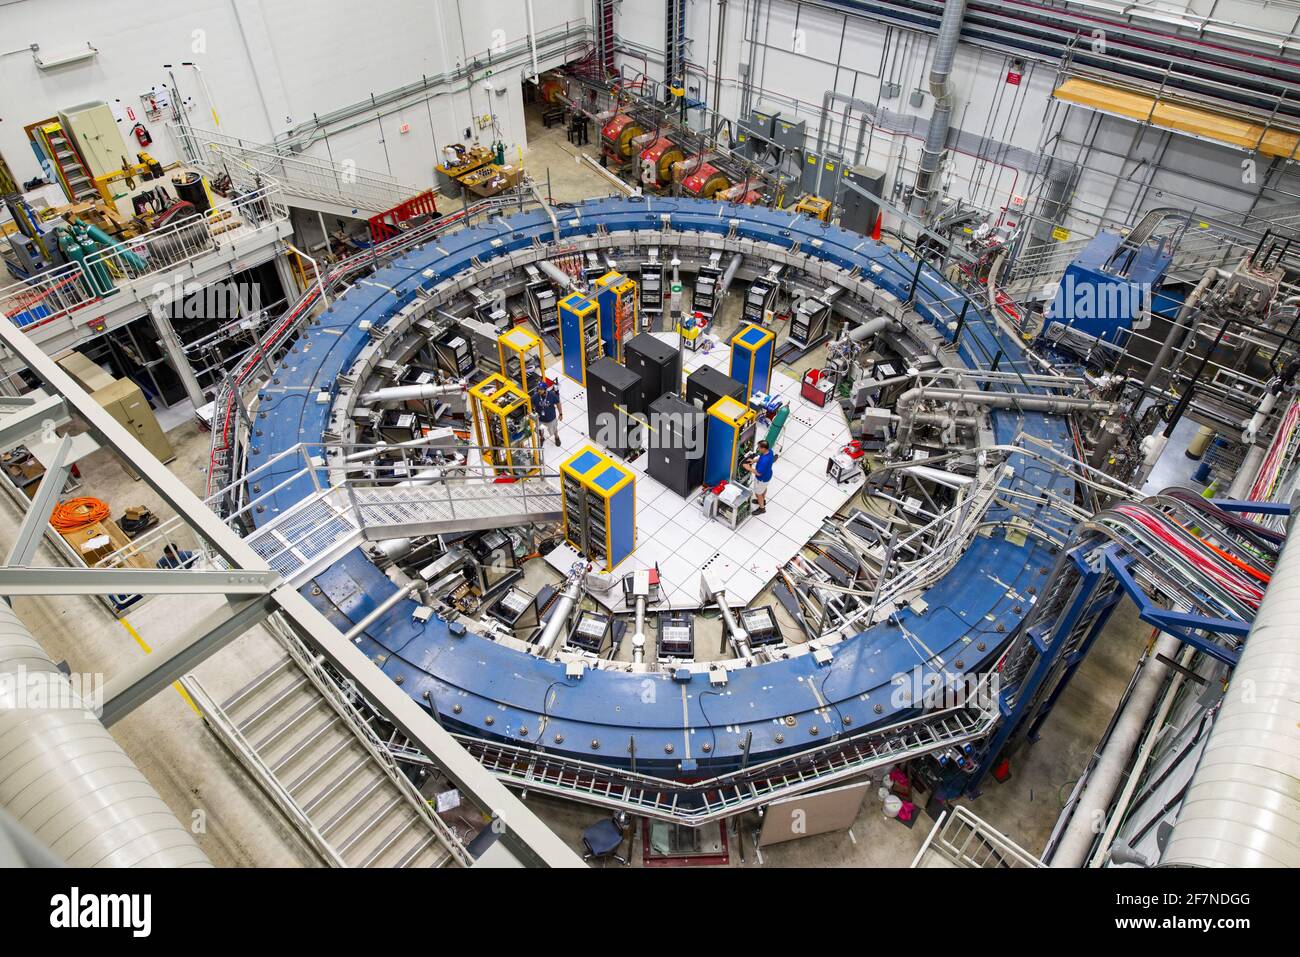 Der Muon g-2 Ring sitzt in seiner Detektorhalle inmitten von Elektronikracks, der Myon-Strahllinie und anderen Geräten. Dieses beeindruckende Experiment arbeitet bei negativen 450 Grad Fahrenheit und untersucht die Präzession (oder Wackeln) von Myonen, während sie durch das Magnetfeld reisen. Zum ersten Mal haben Wissenschaftler die Wechselwirkungen zwischen Neutrinos, die auf die Atomkerne treffen, im Herzen des Fermilab-Teilchendetektors der Energieabteilung präzise gemessen. Die Ergebnisse, die in der Fachzeitschrift Physical Review Letters ausführlich beschrieben werden, beseitigen einen Großteil der Unsicherheit, die theoretische Modelle von Neutrino osc untergräbt Stockfoto